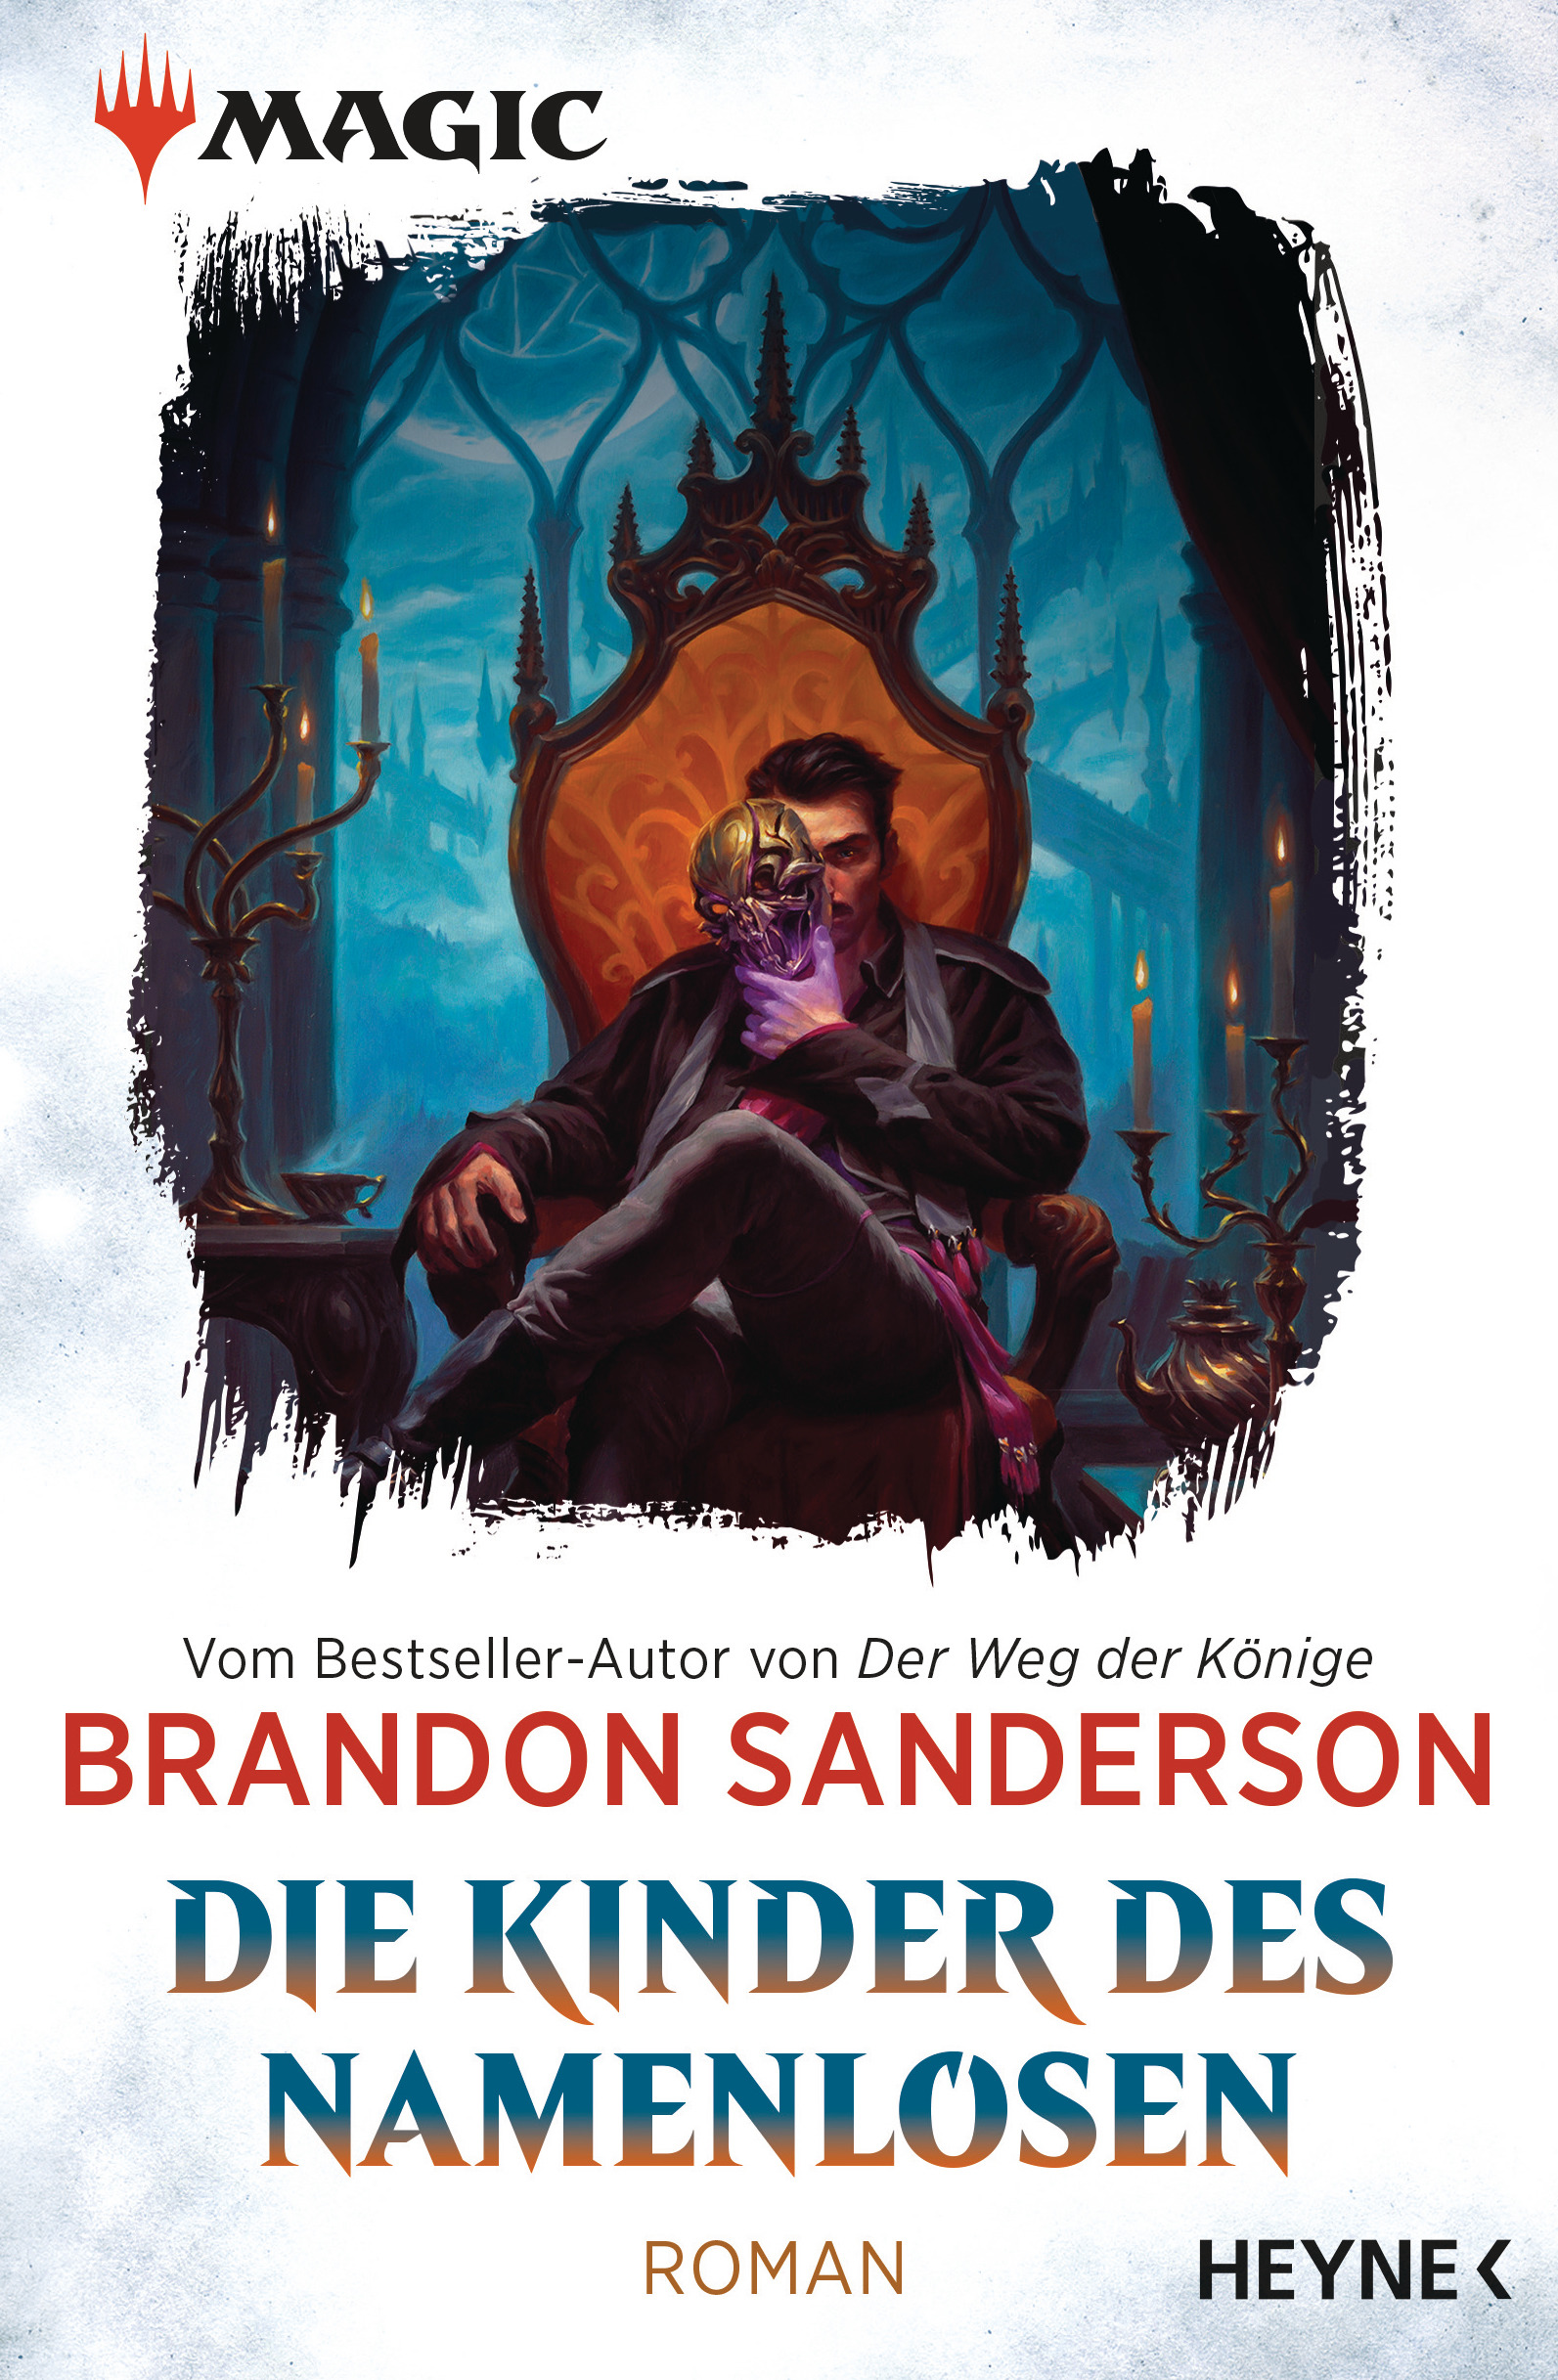 Bücherblog. Neuerscheinungen. Buchcover. MAGIC: The Gathering - Die Kinder des Namenlosen (Bd.1) von Brandon Sanderson. Fantasy. Heyne.